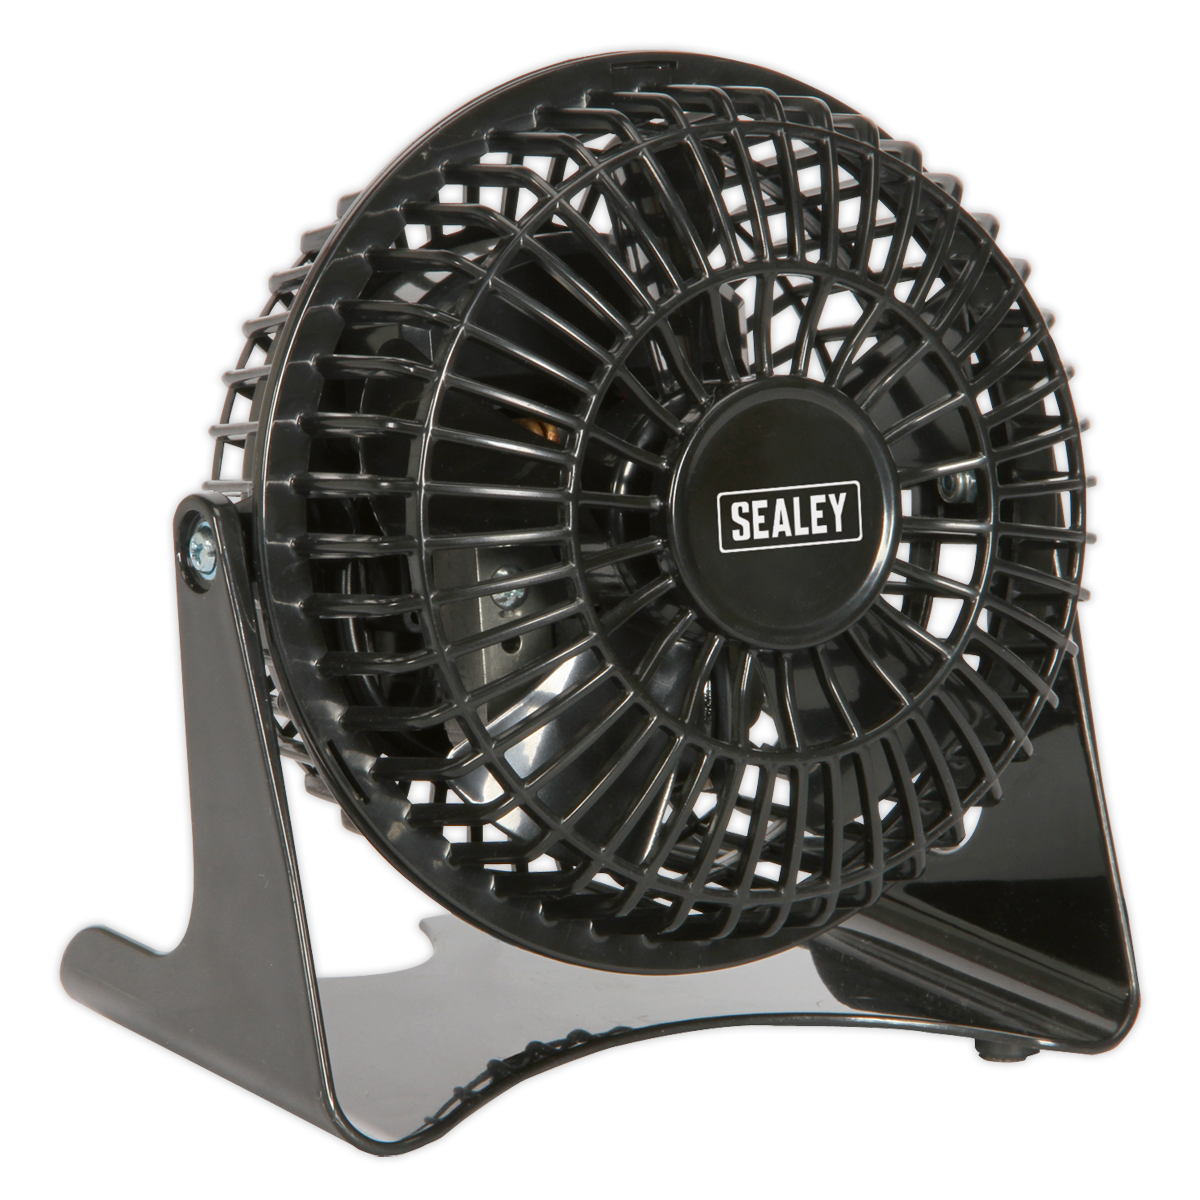 Sealey Desk Fan Mini 4" 230V